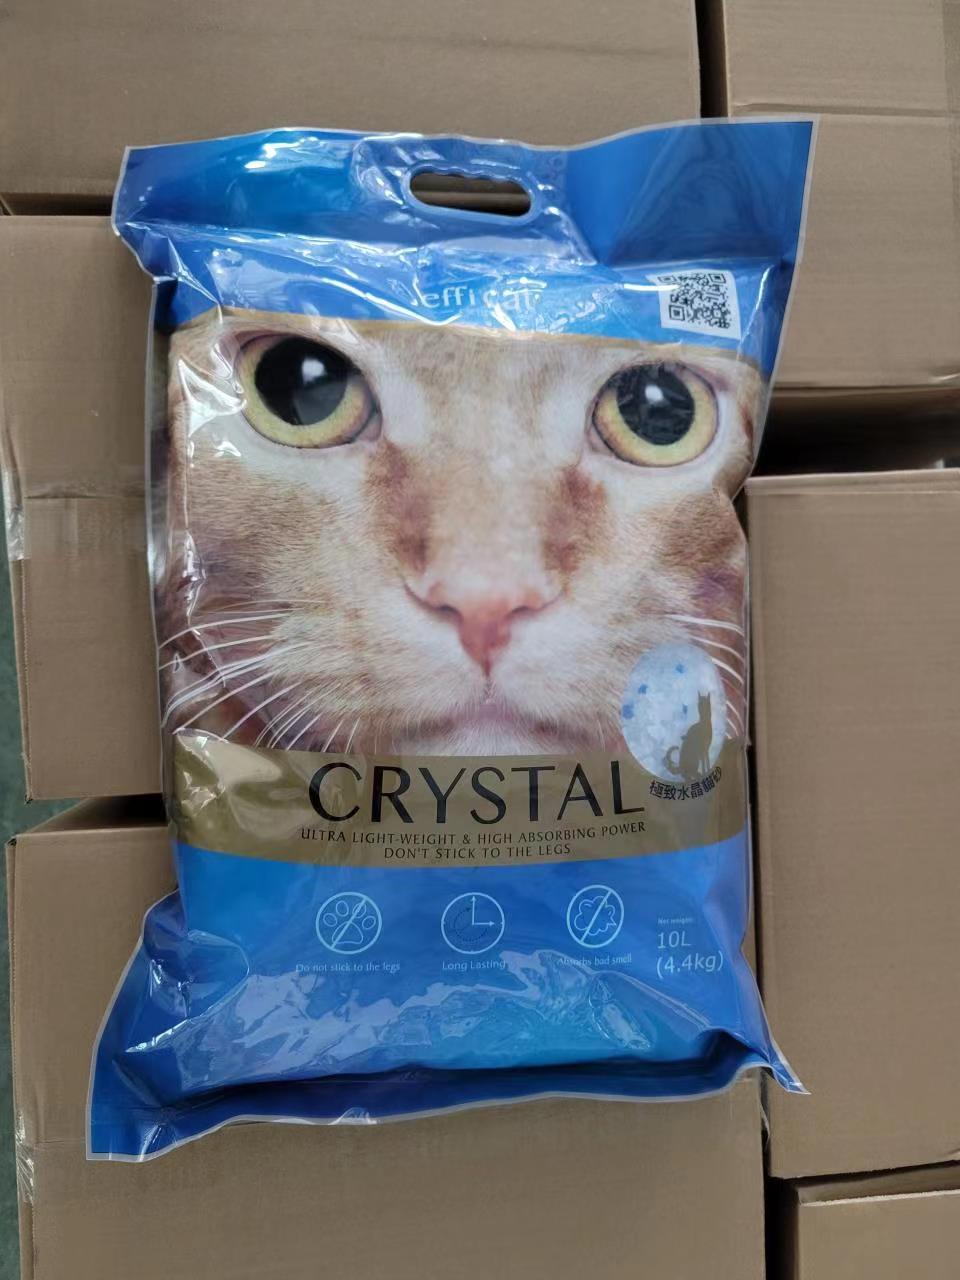 CRYSTAL CAT LITTER 4.4KG BAG